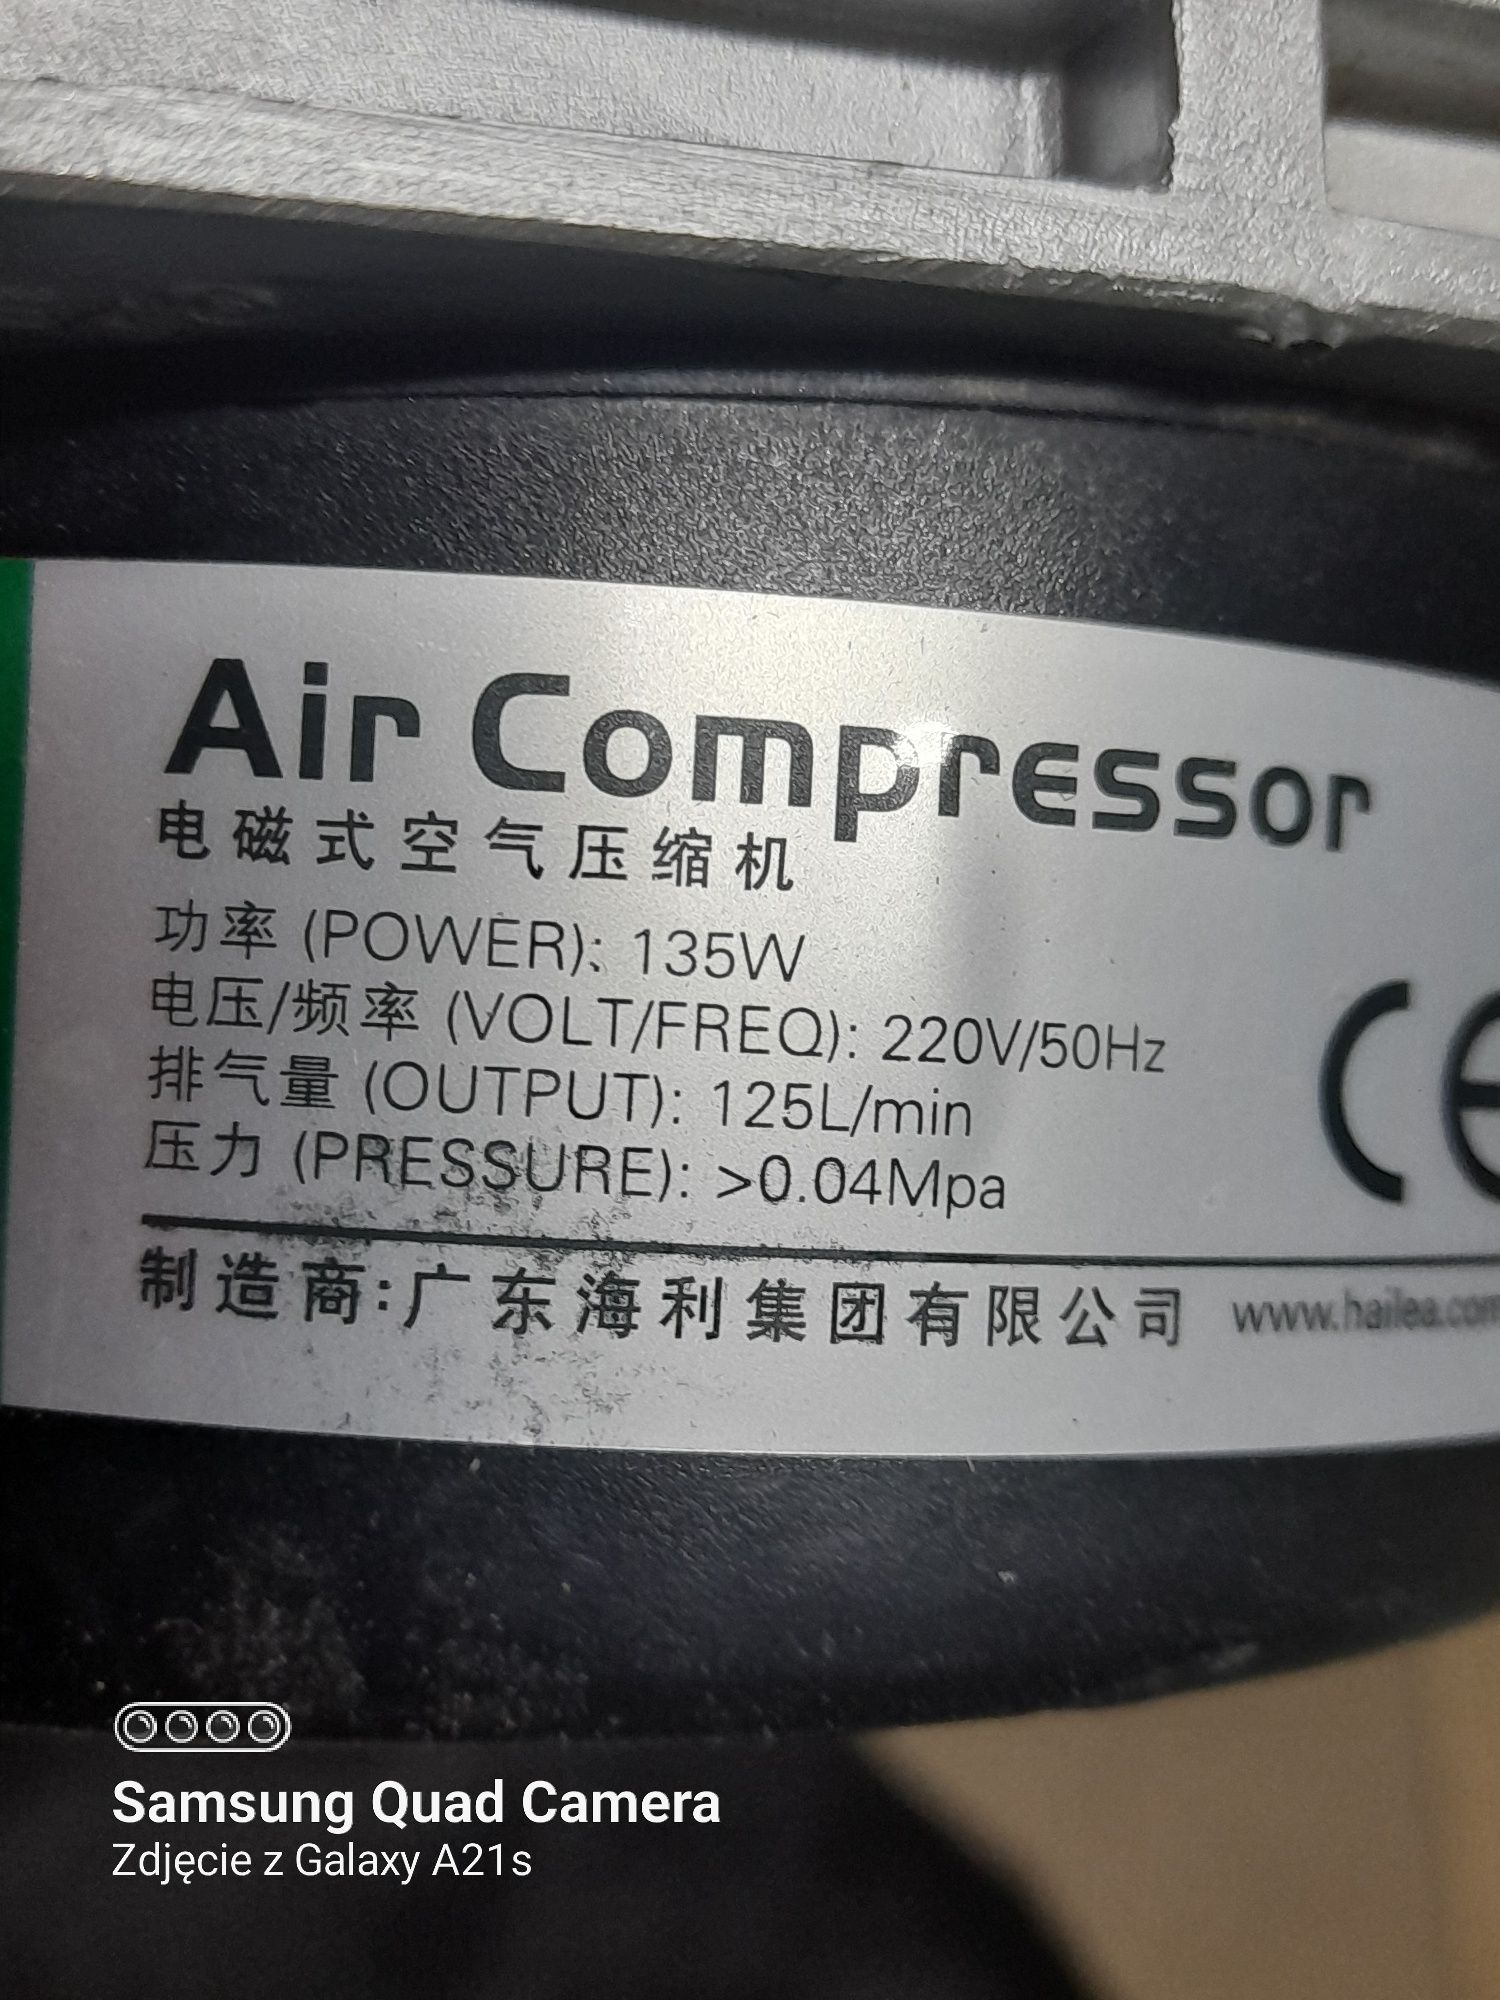 Pompa powietrza mocna. 135W i 125l/min czyli 7500l/h